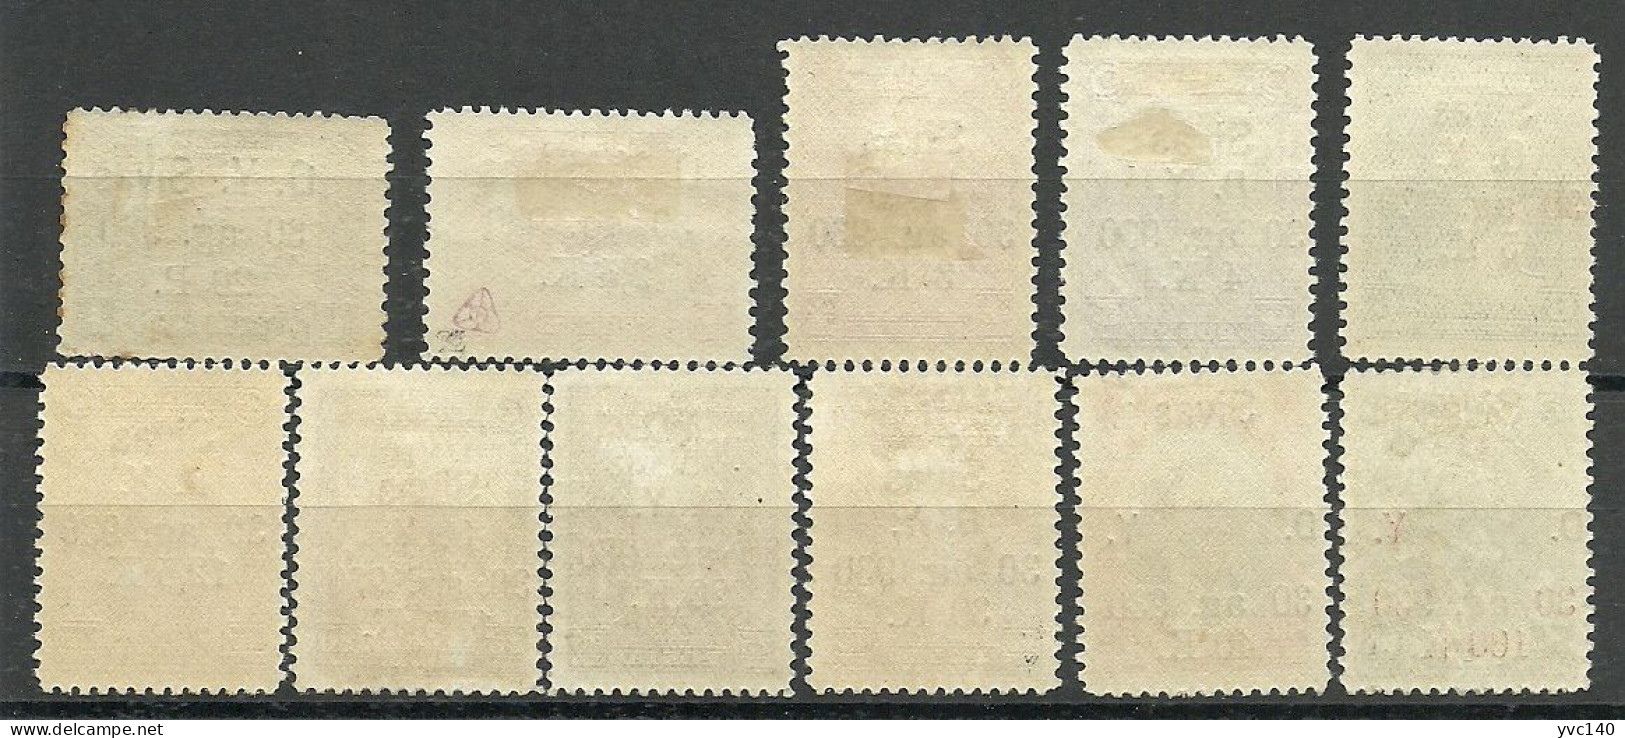 Turkey; 1930 Ankara-Sivas Railway Stamps "Broken (D)" ERROR MNH**/MH* RRR - Ungebraucht